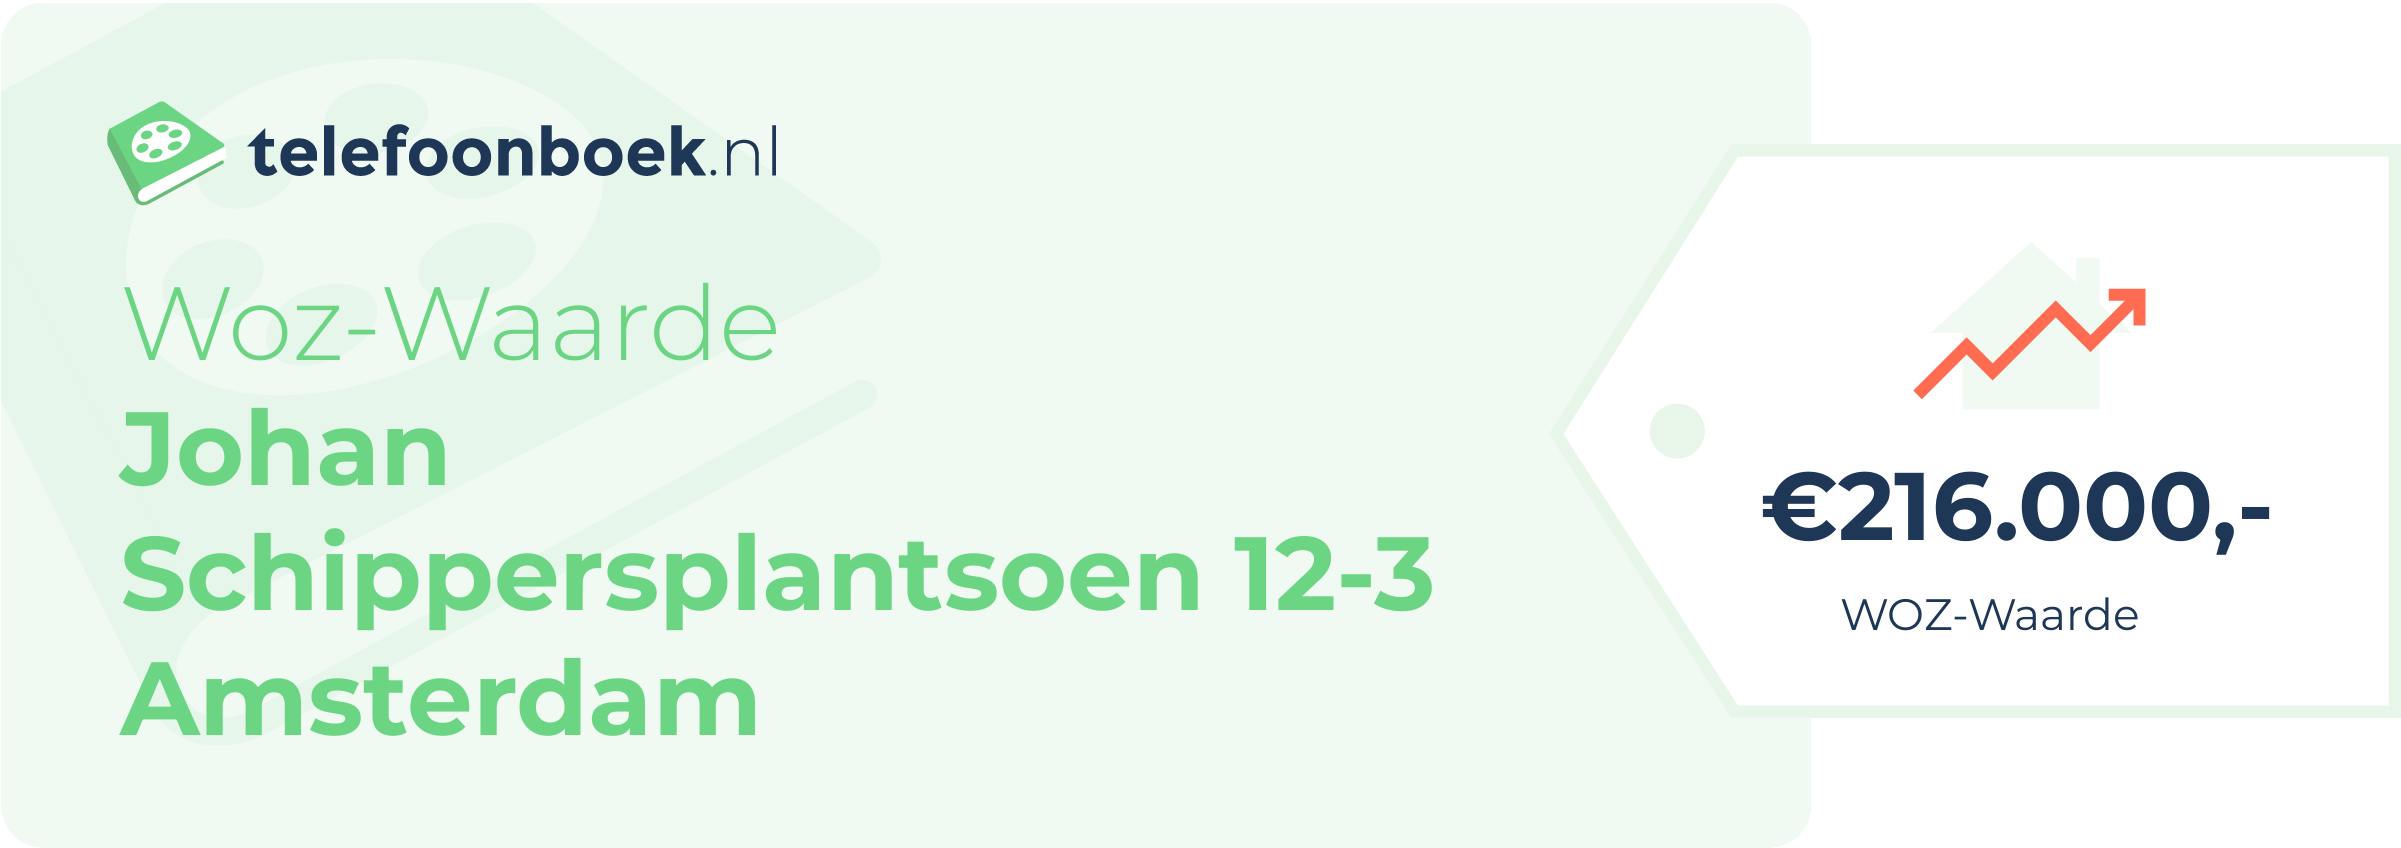 WOZ-waarde Johan Schippersplantsoen 12-3 Amsterdam